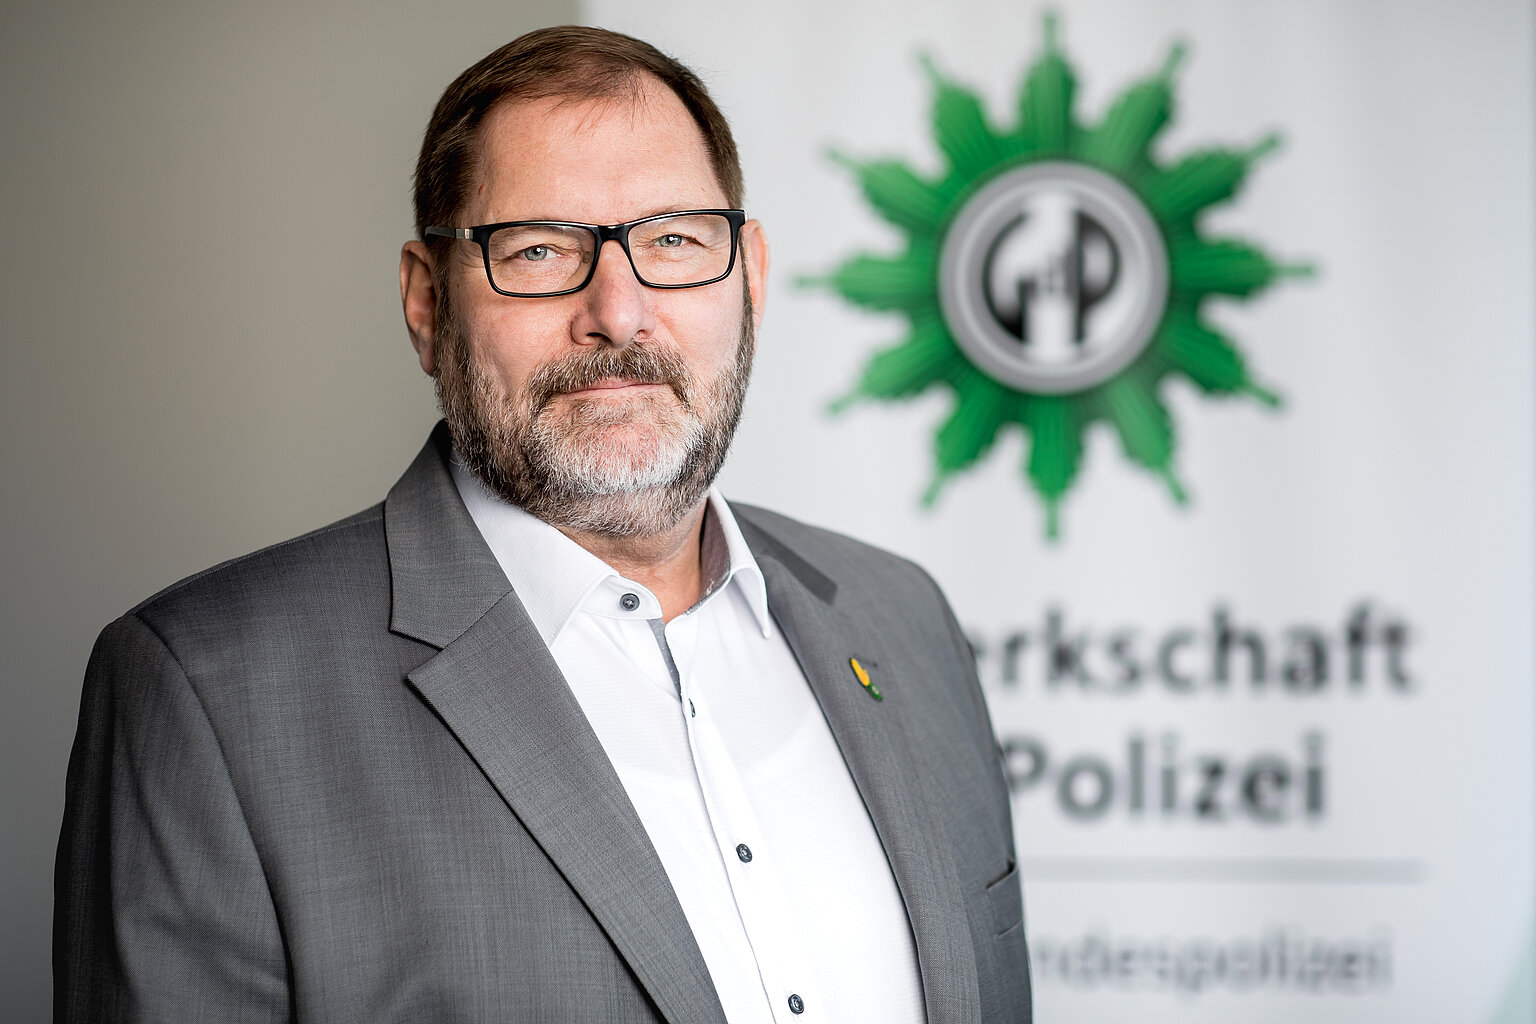  – Jörg Radek ist seit 2010 stellvertretender Bundesvorsitzender der Gewerkschaft der Polizei. (Foto: GdP/Hagen Immel)